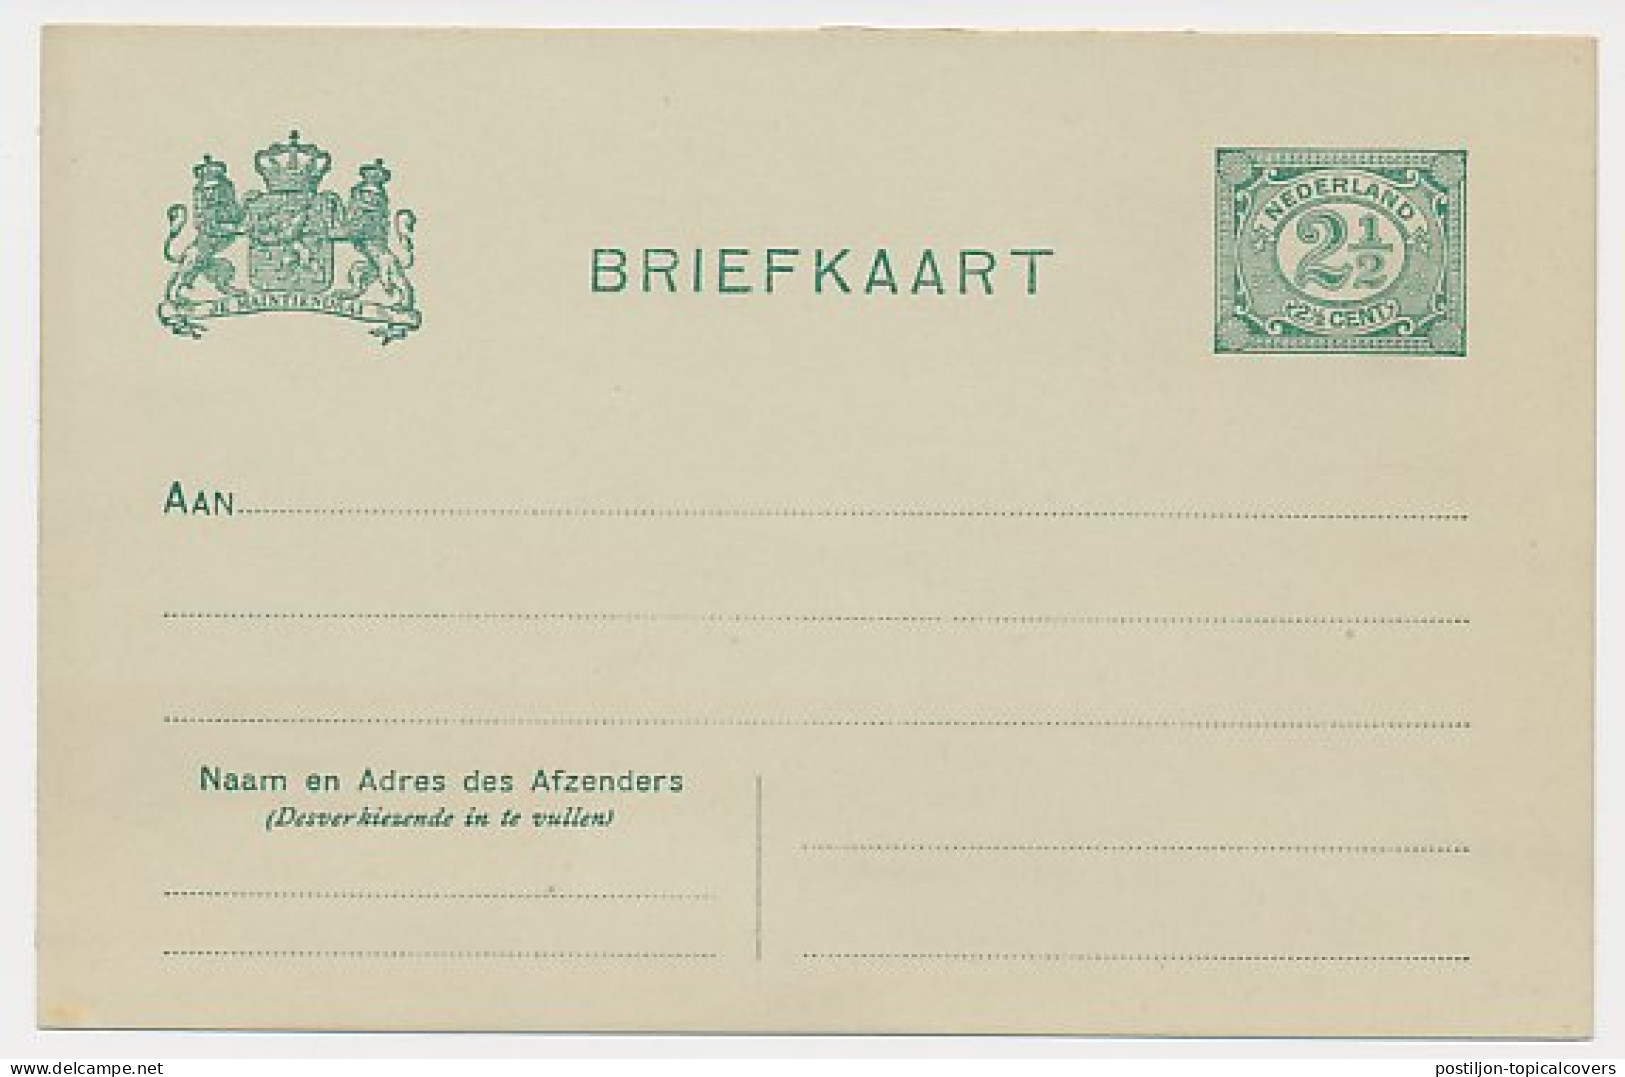 Briefkaart G. 67 - Ganzsachen